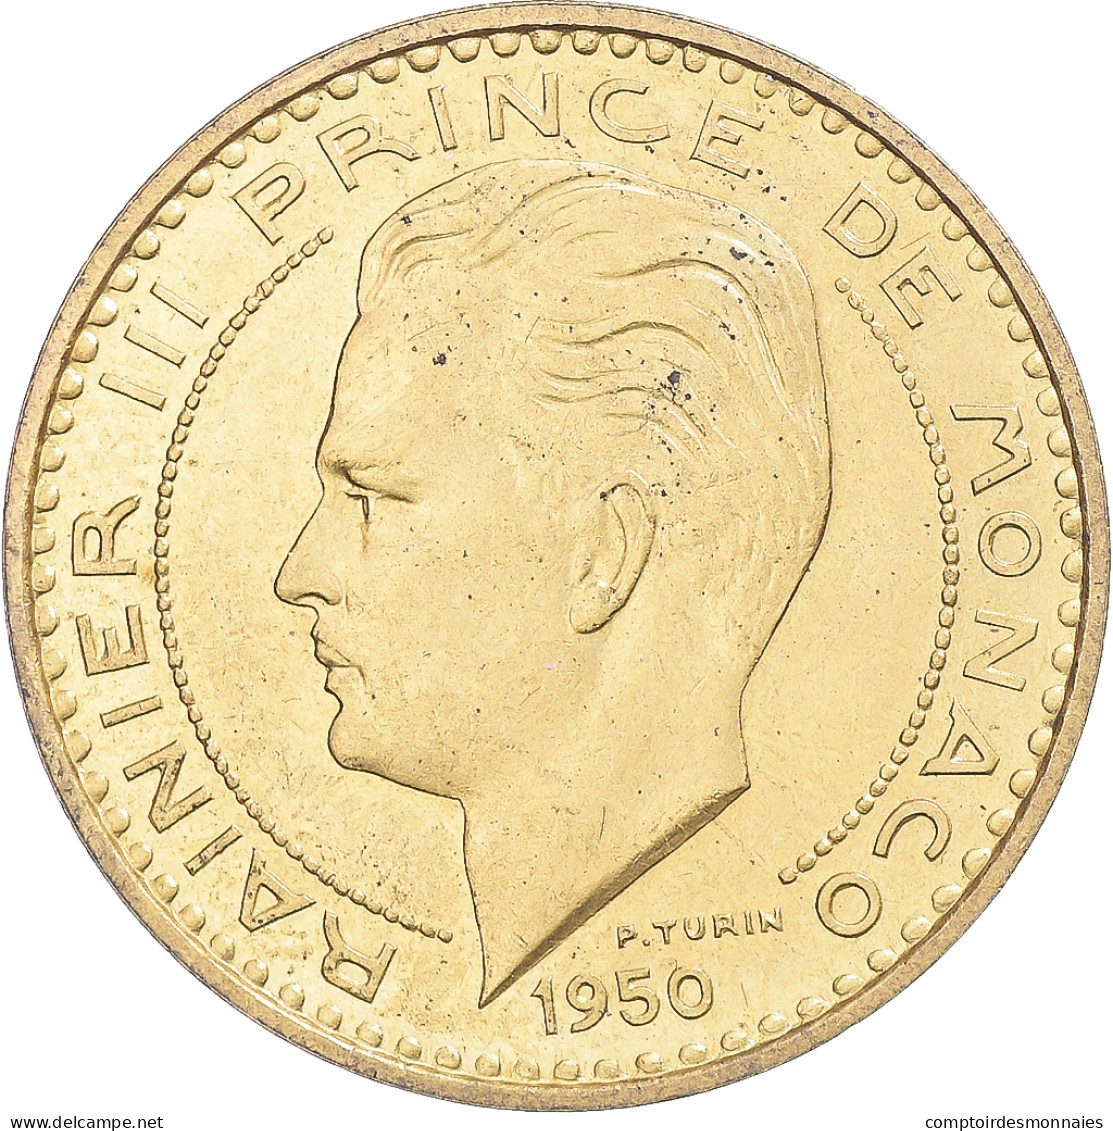 Monnaie, Monaco, Rainier III, 20 Francs, 1950, Paris, ESSAI, SUP - 1949-1956 Old Francs